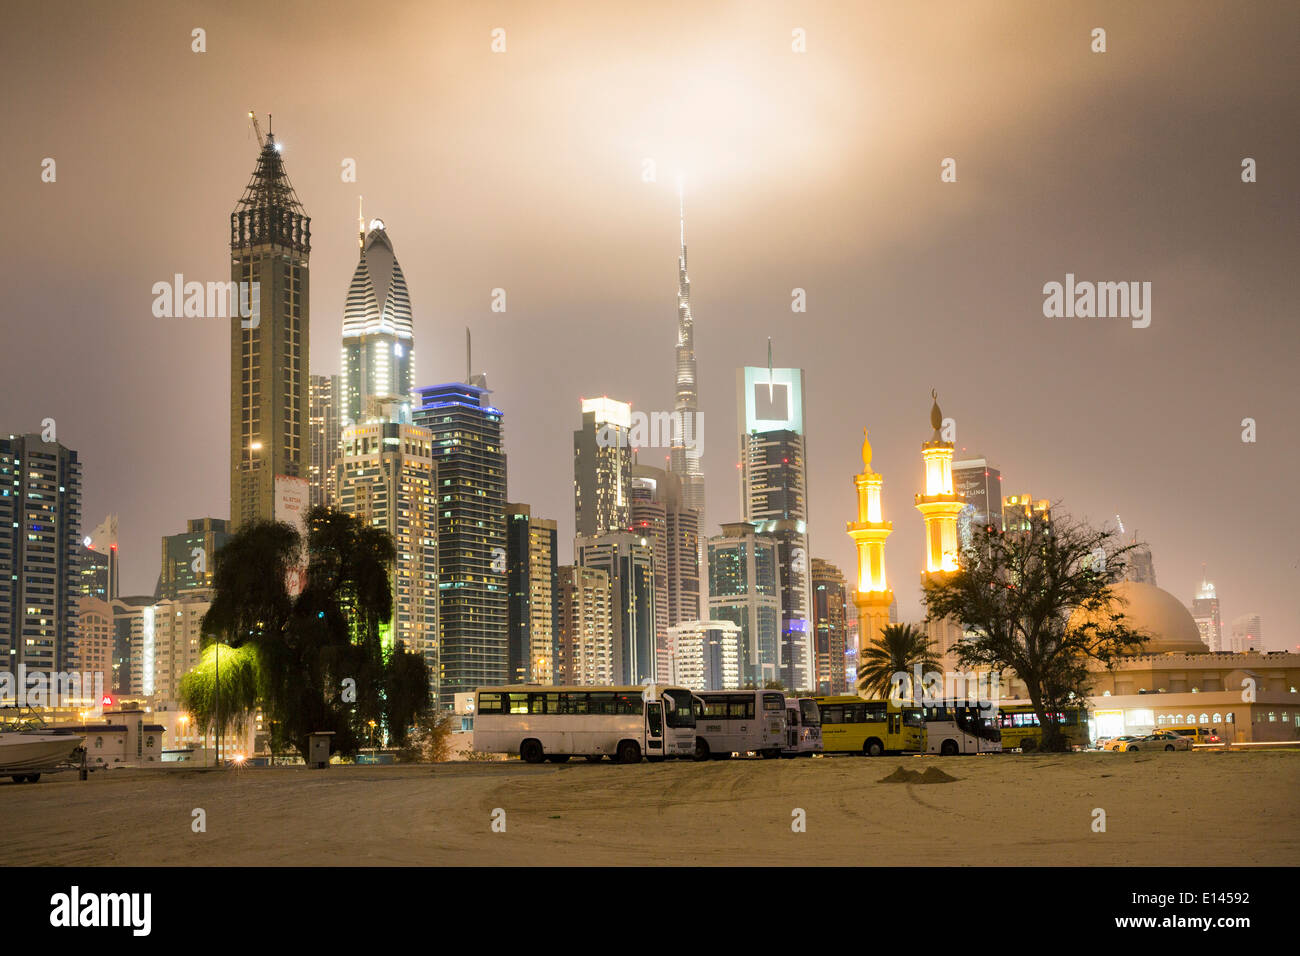 Vereinigte Arabische Emirate, Dubai, finanzielle Zentrum Skyline der Stadt mit Burj Khalifa, dem höchsten Gebäude der Welt. Moschee. Twilight Stockfoto